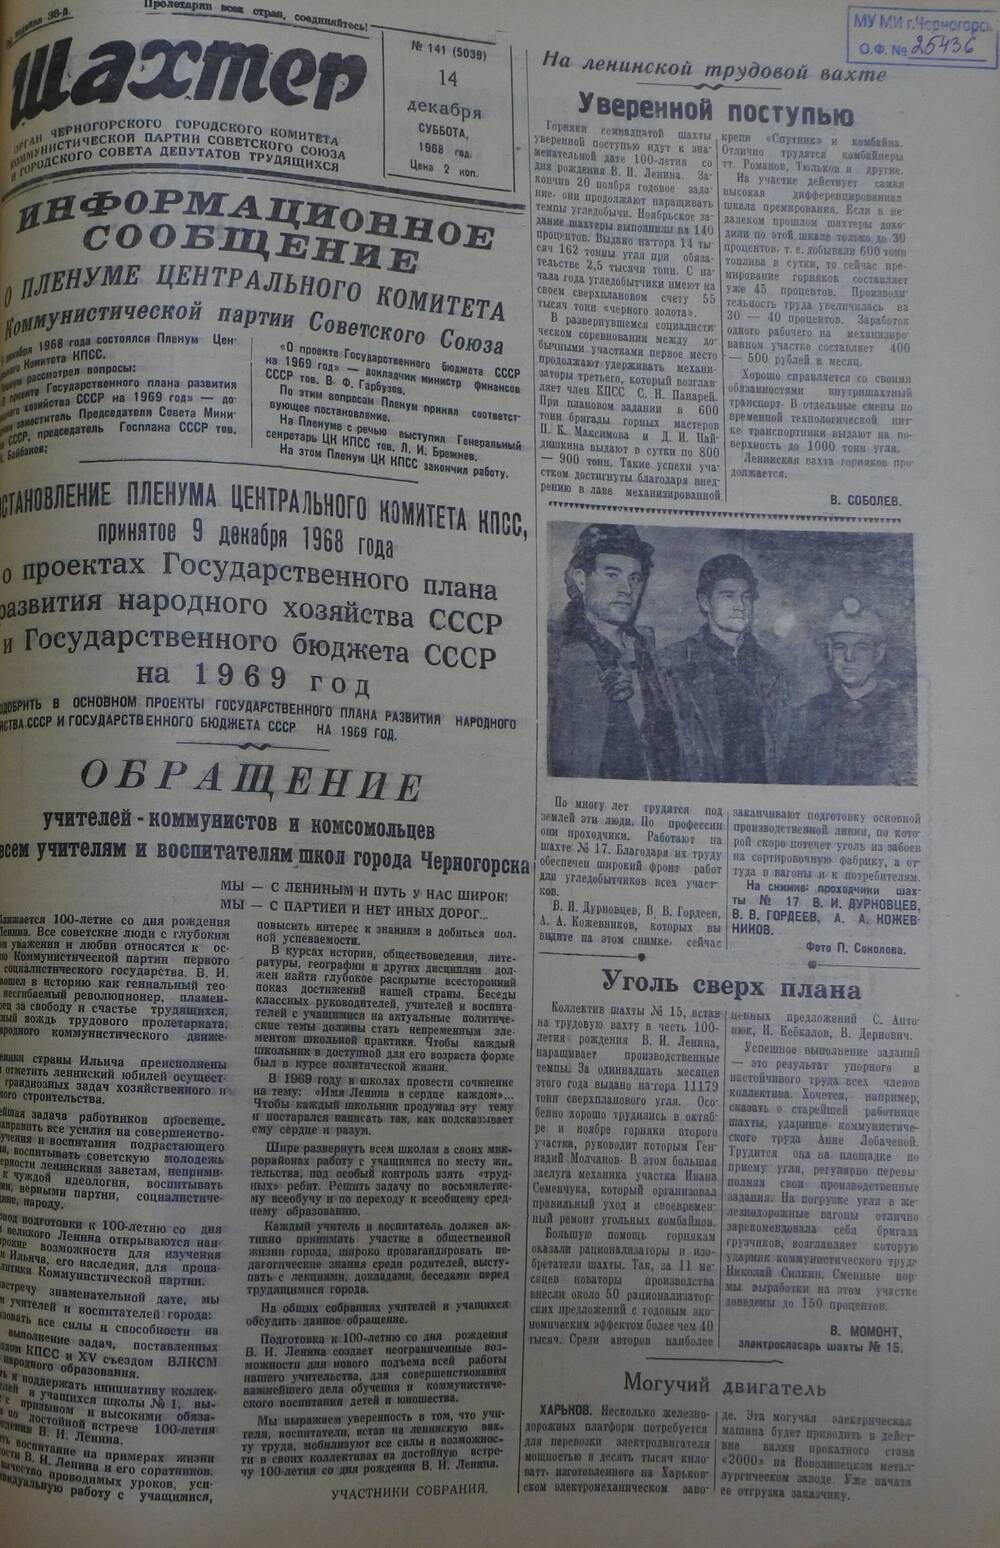 Газета «Шахтер». Выпуск № 141 от 14.12.1968 г.